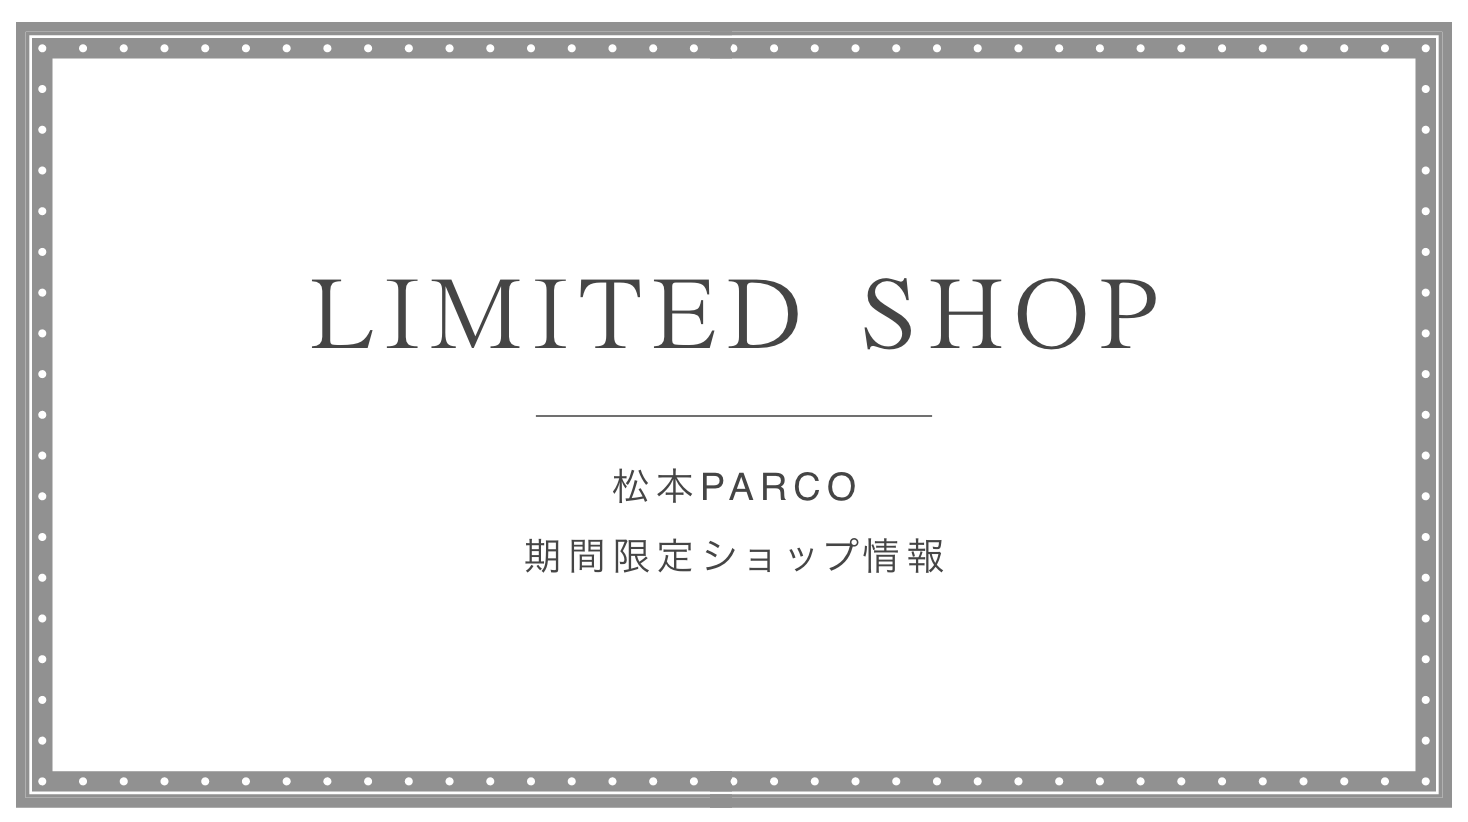 期間限定ショップ | 松本PARCO